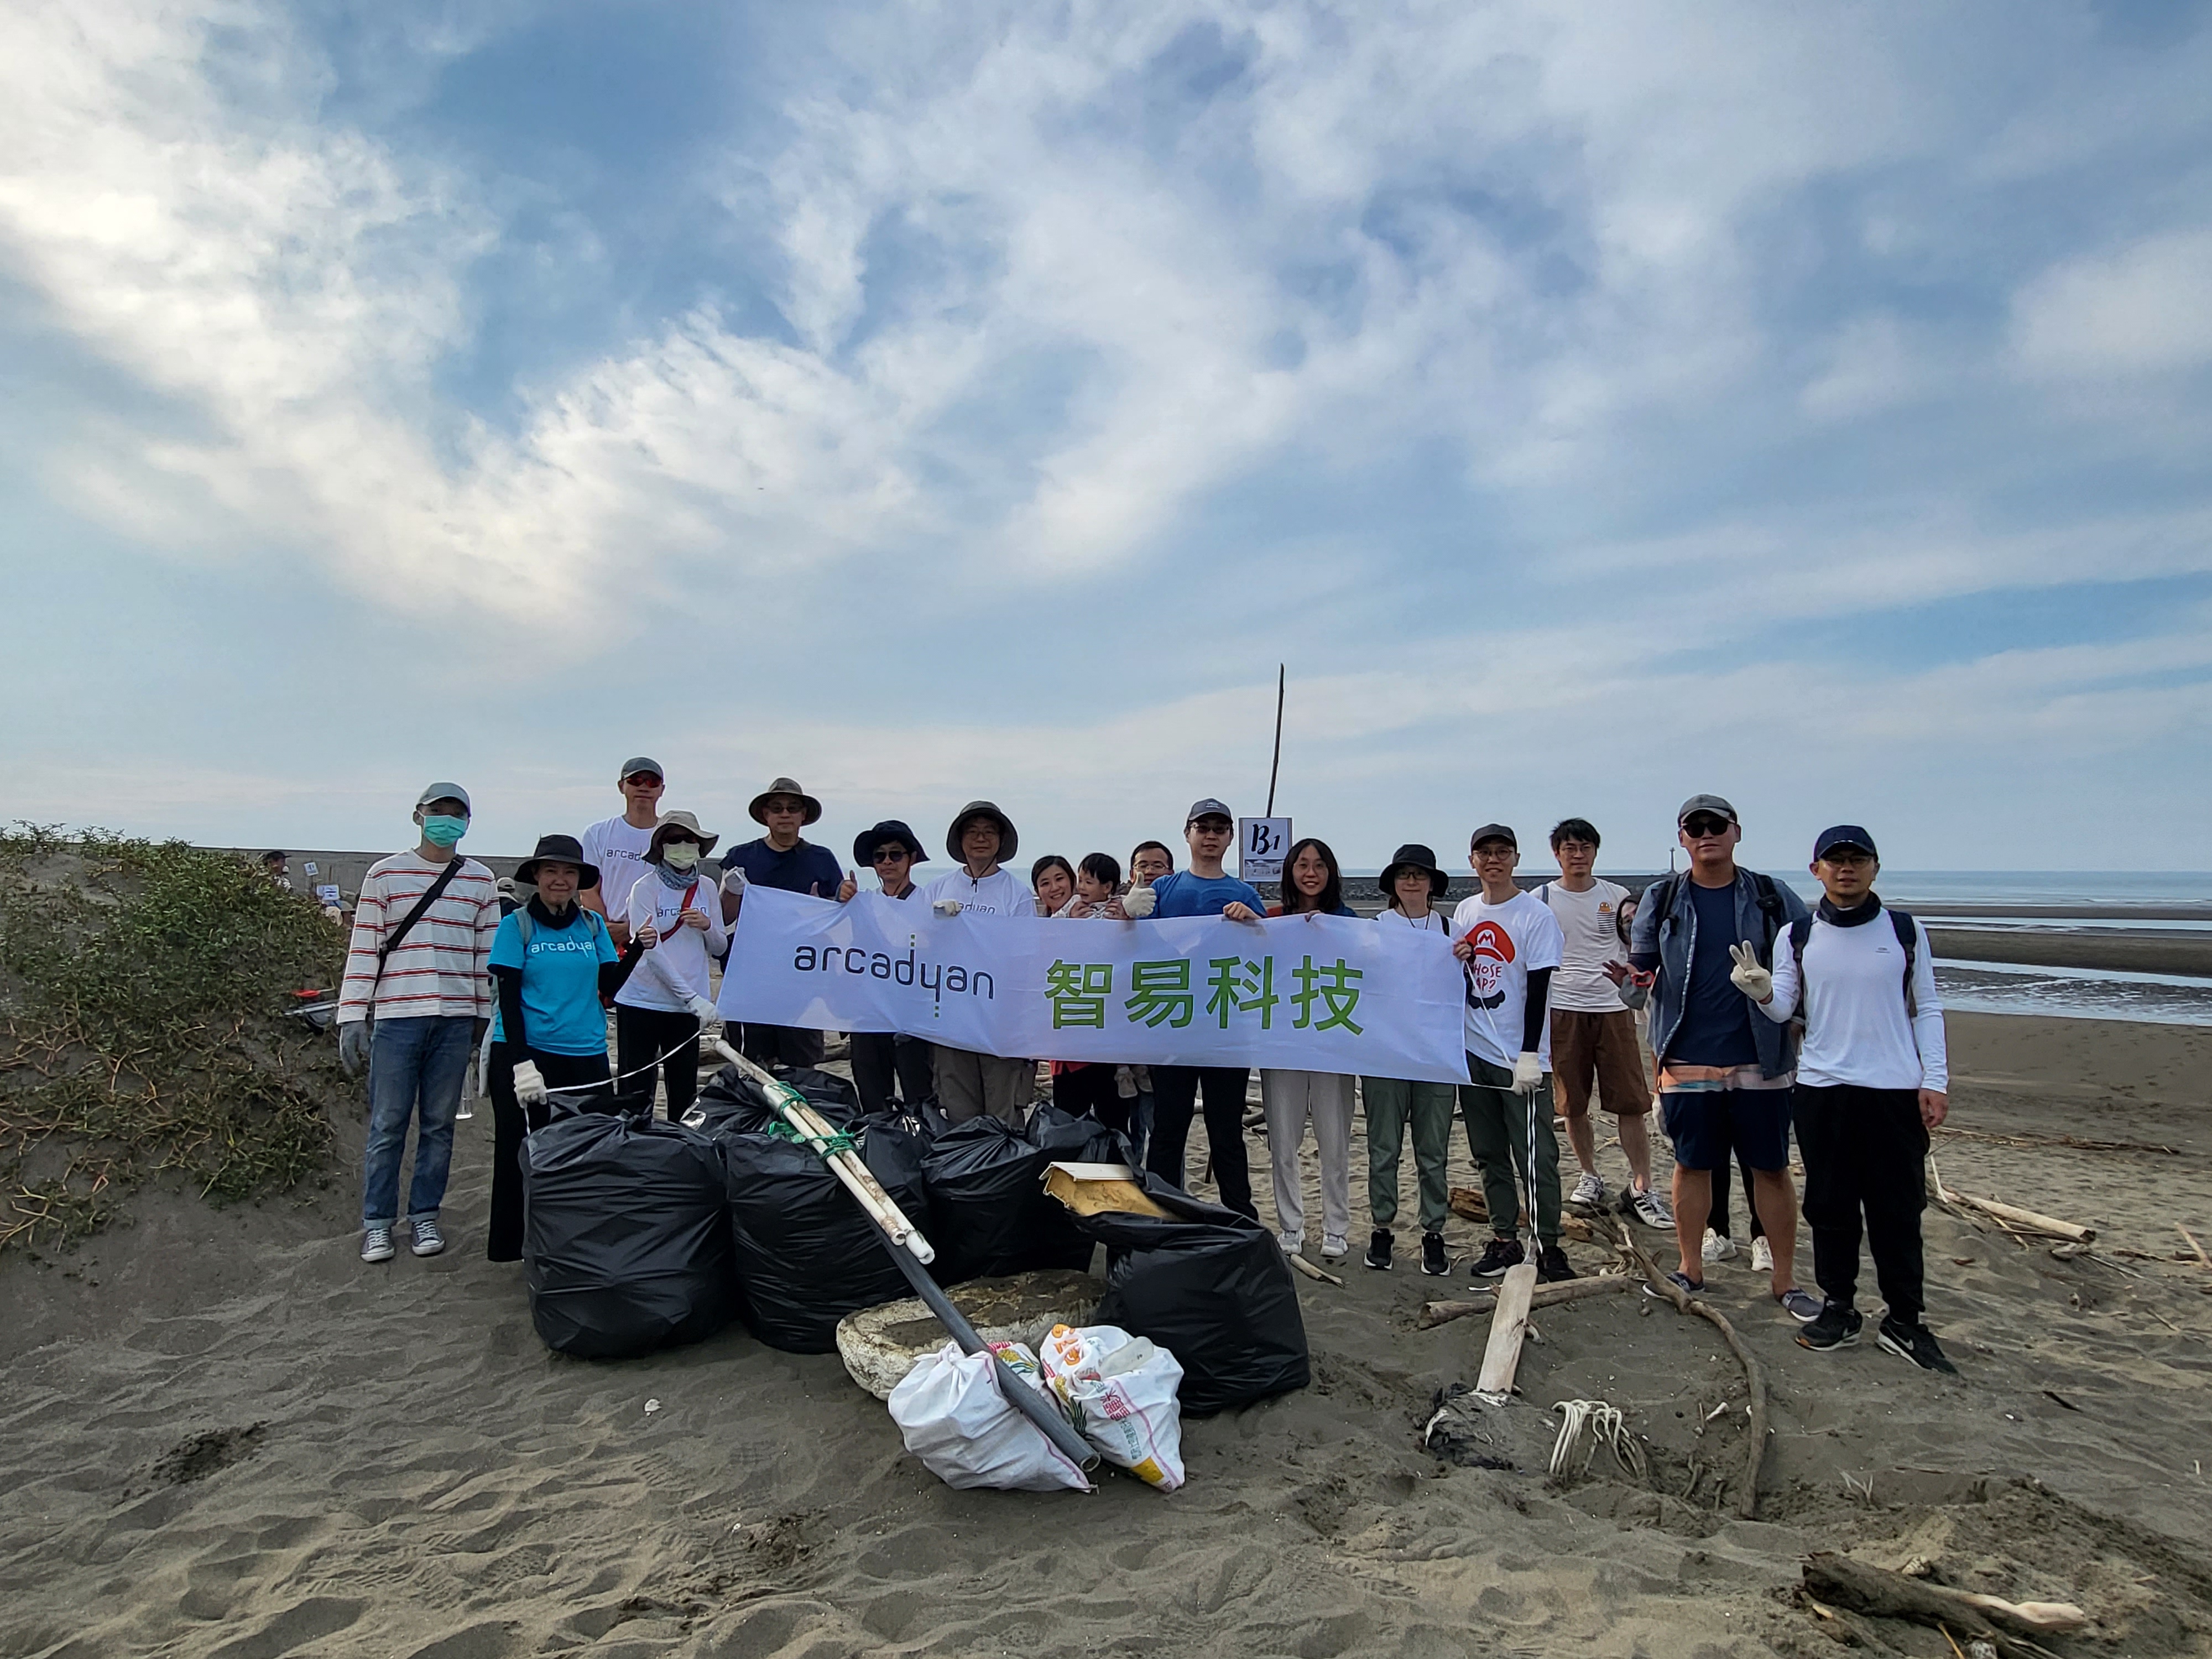 智易響應國際淨灘日 清理2,300kg海廢垃圾